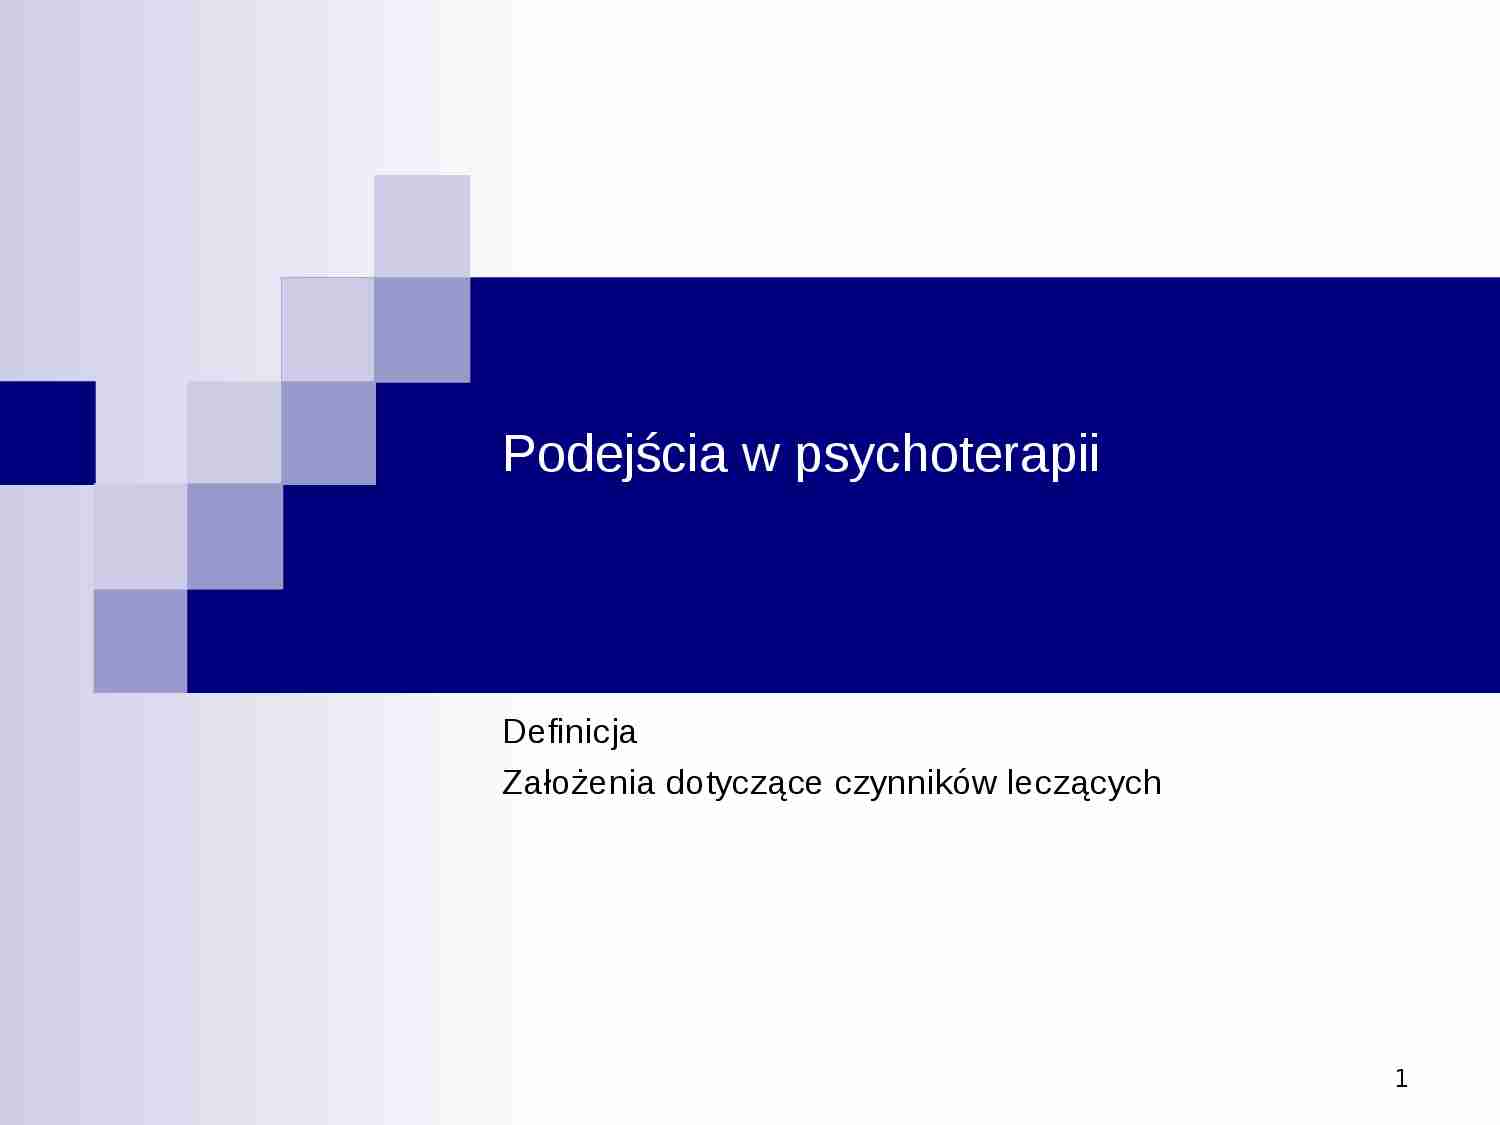 Podejścia w psychoterapii - strona 1